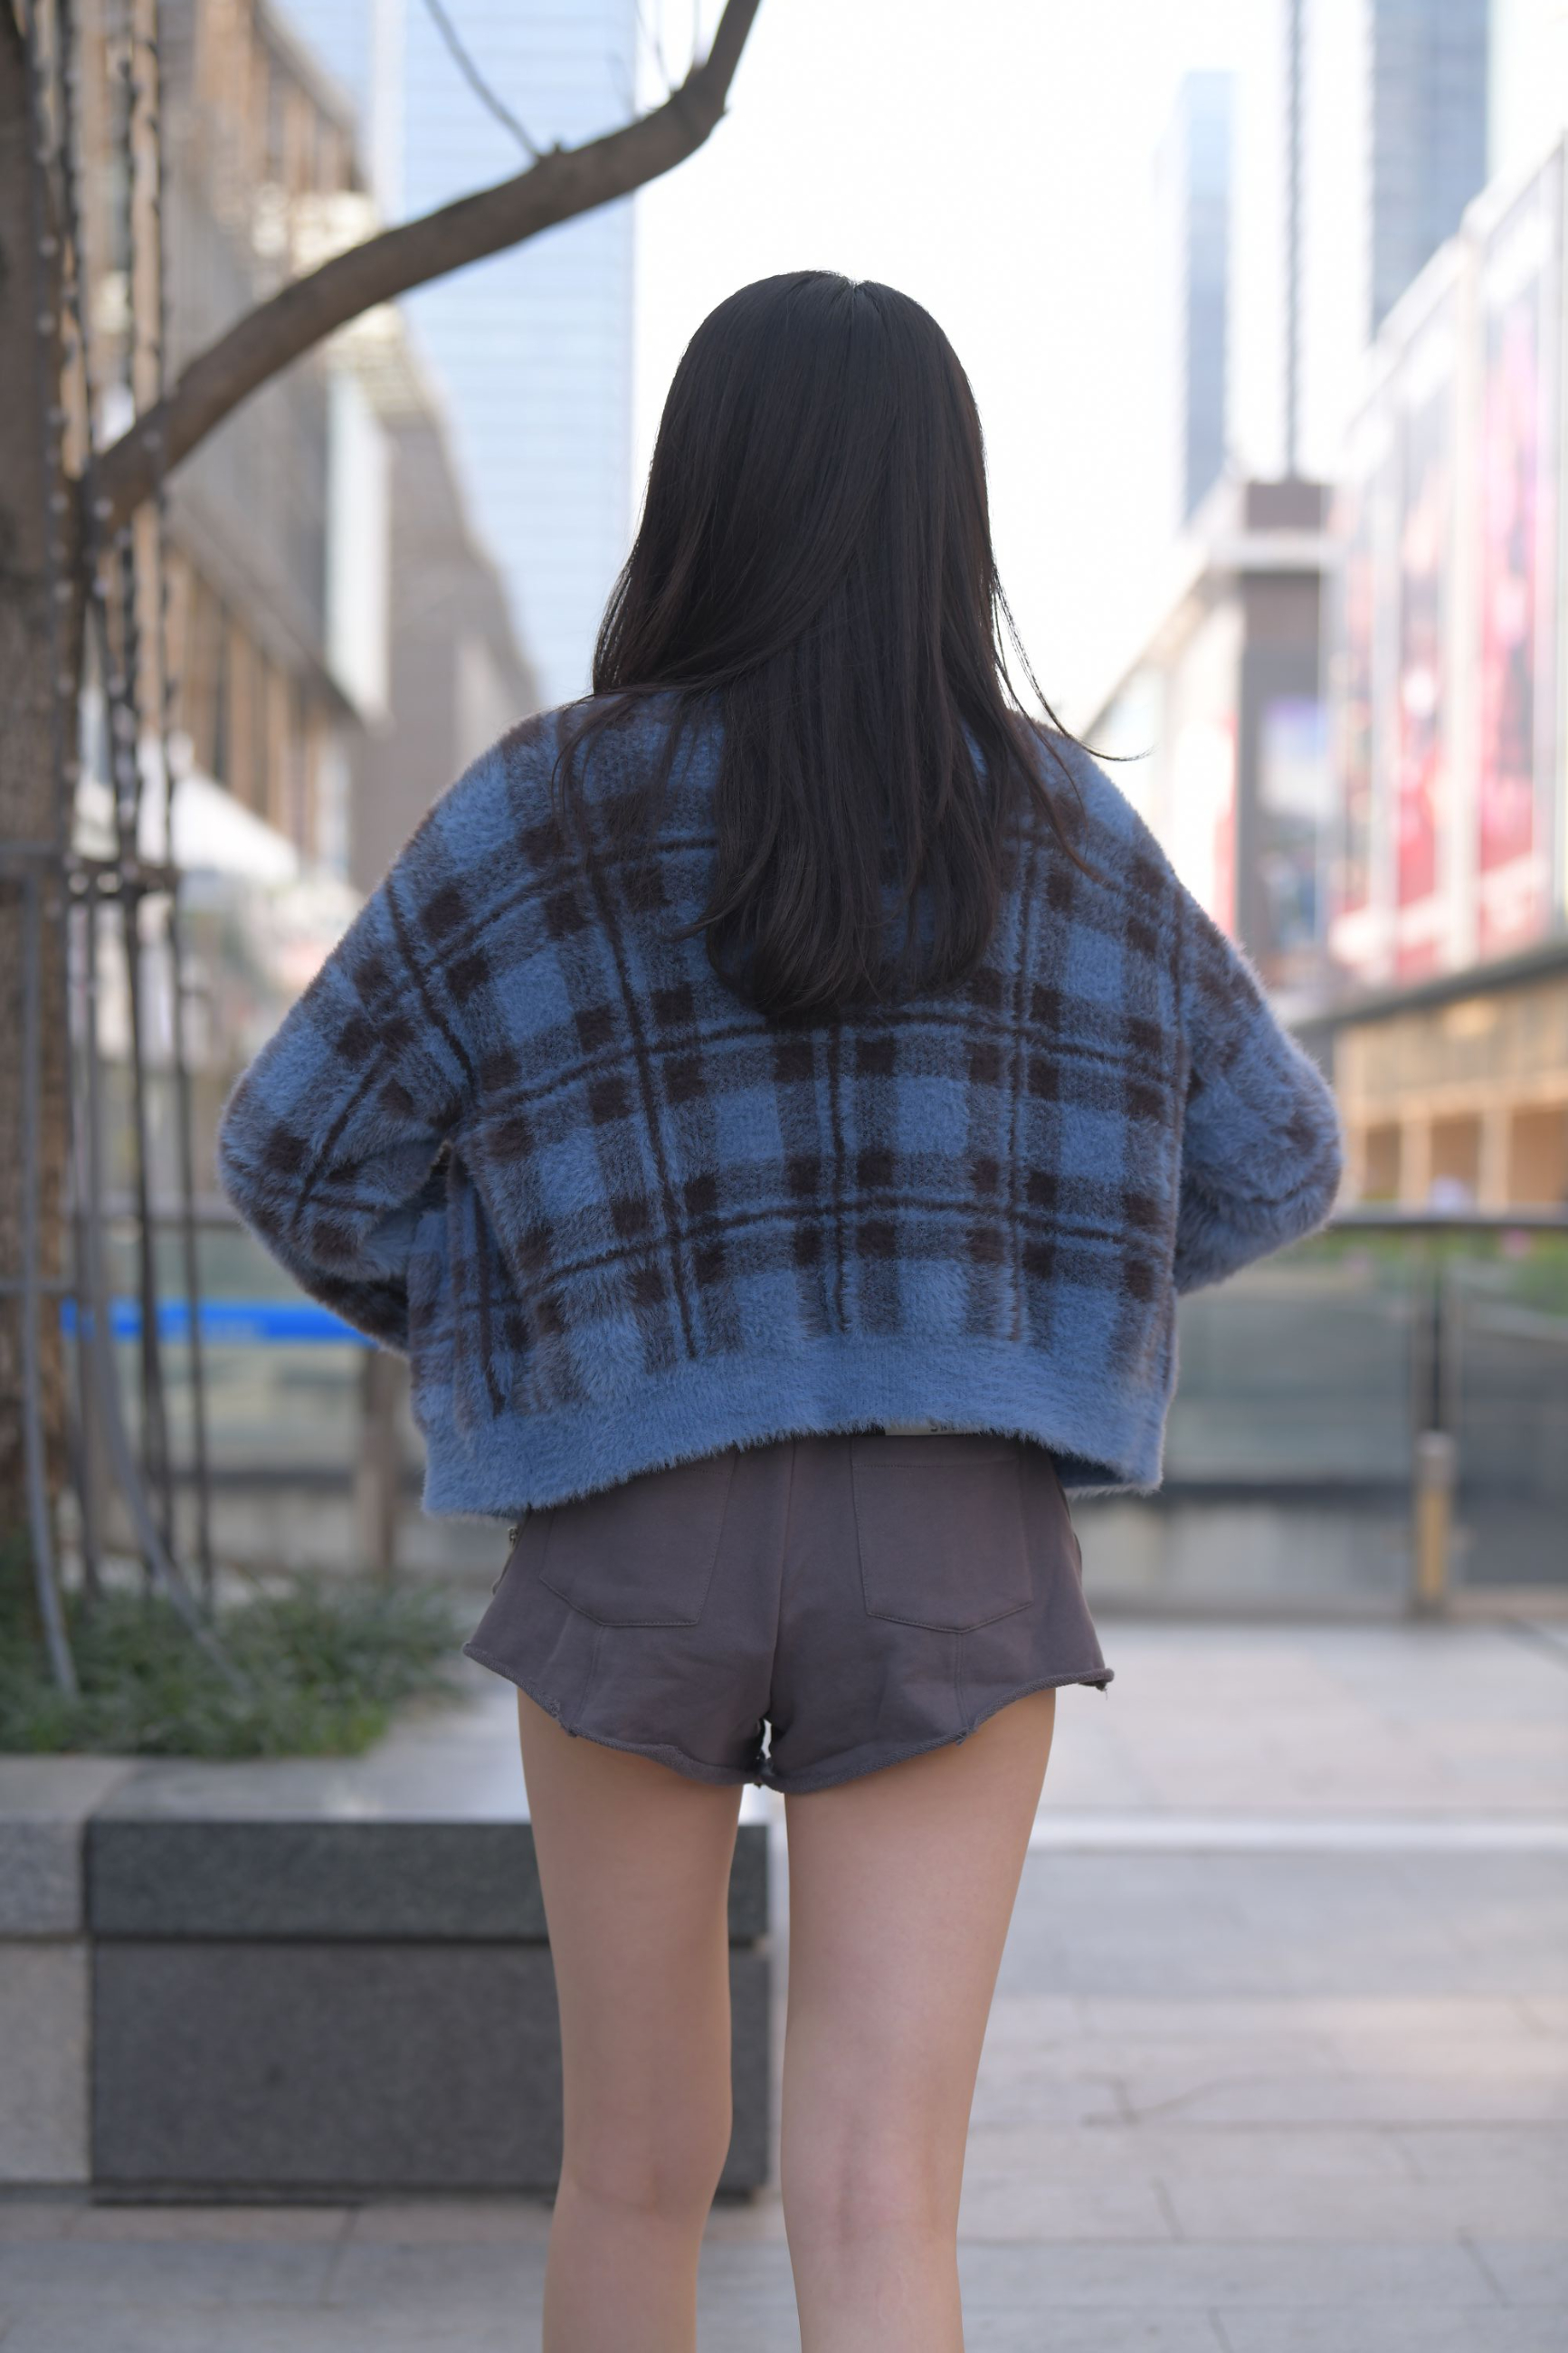 512.【红石街拍作品】灰色热裤长腿美女 - 第12张